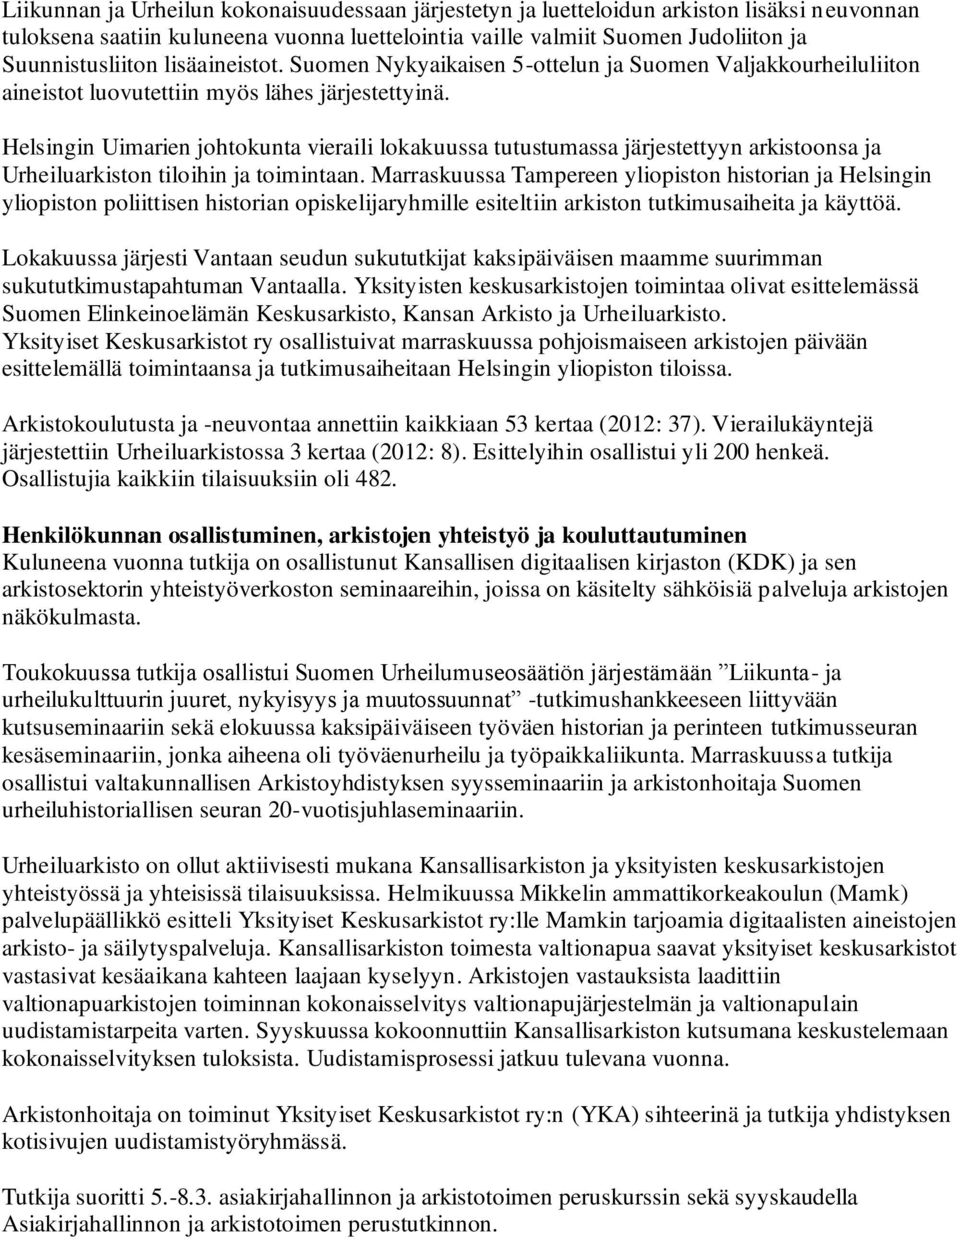 Helsingin Uimarien johtokunta vieraili lokakuussa tutustumassa järjestettyyn arkistoonsa ja Urheiluarkiston tiloihin ja toimintaan.